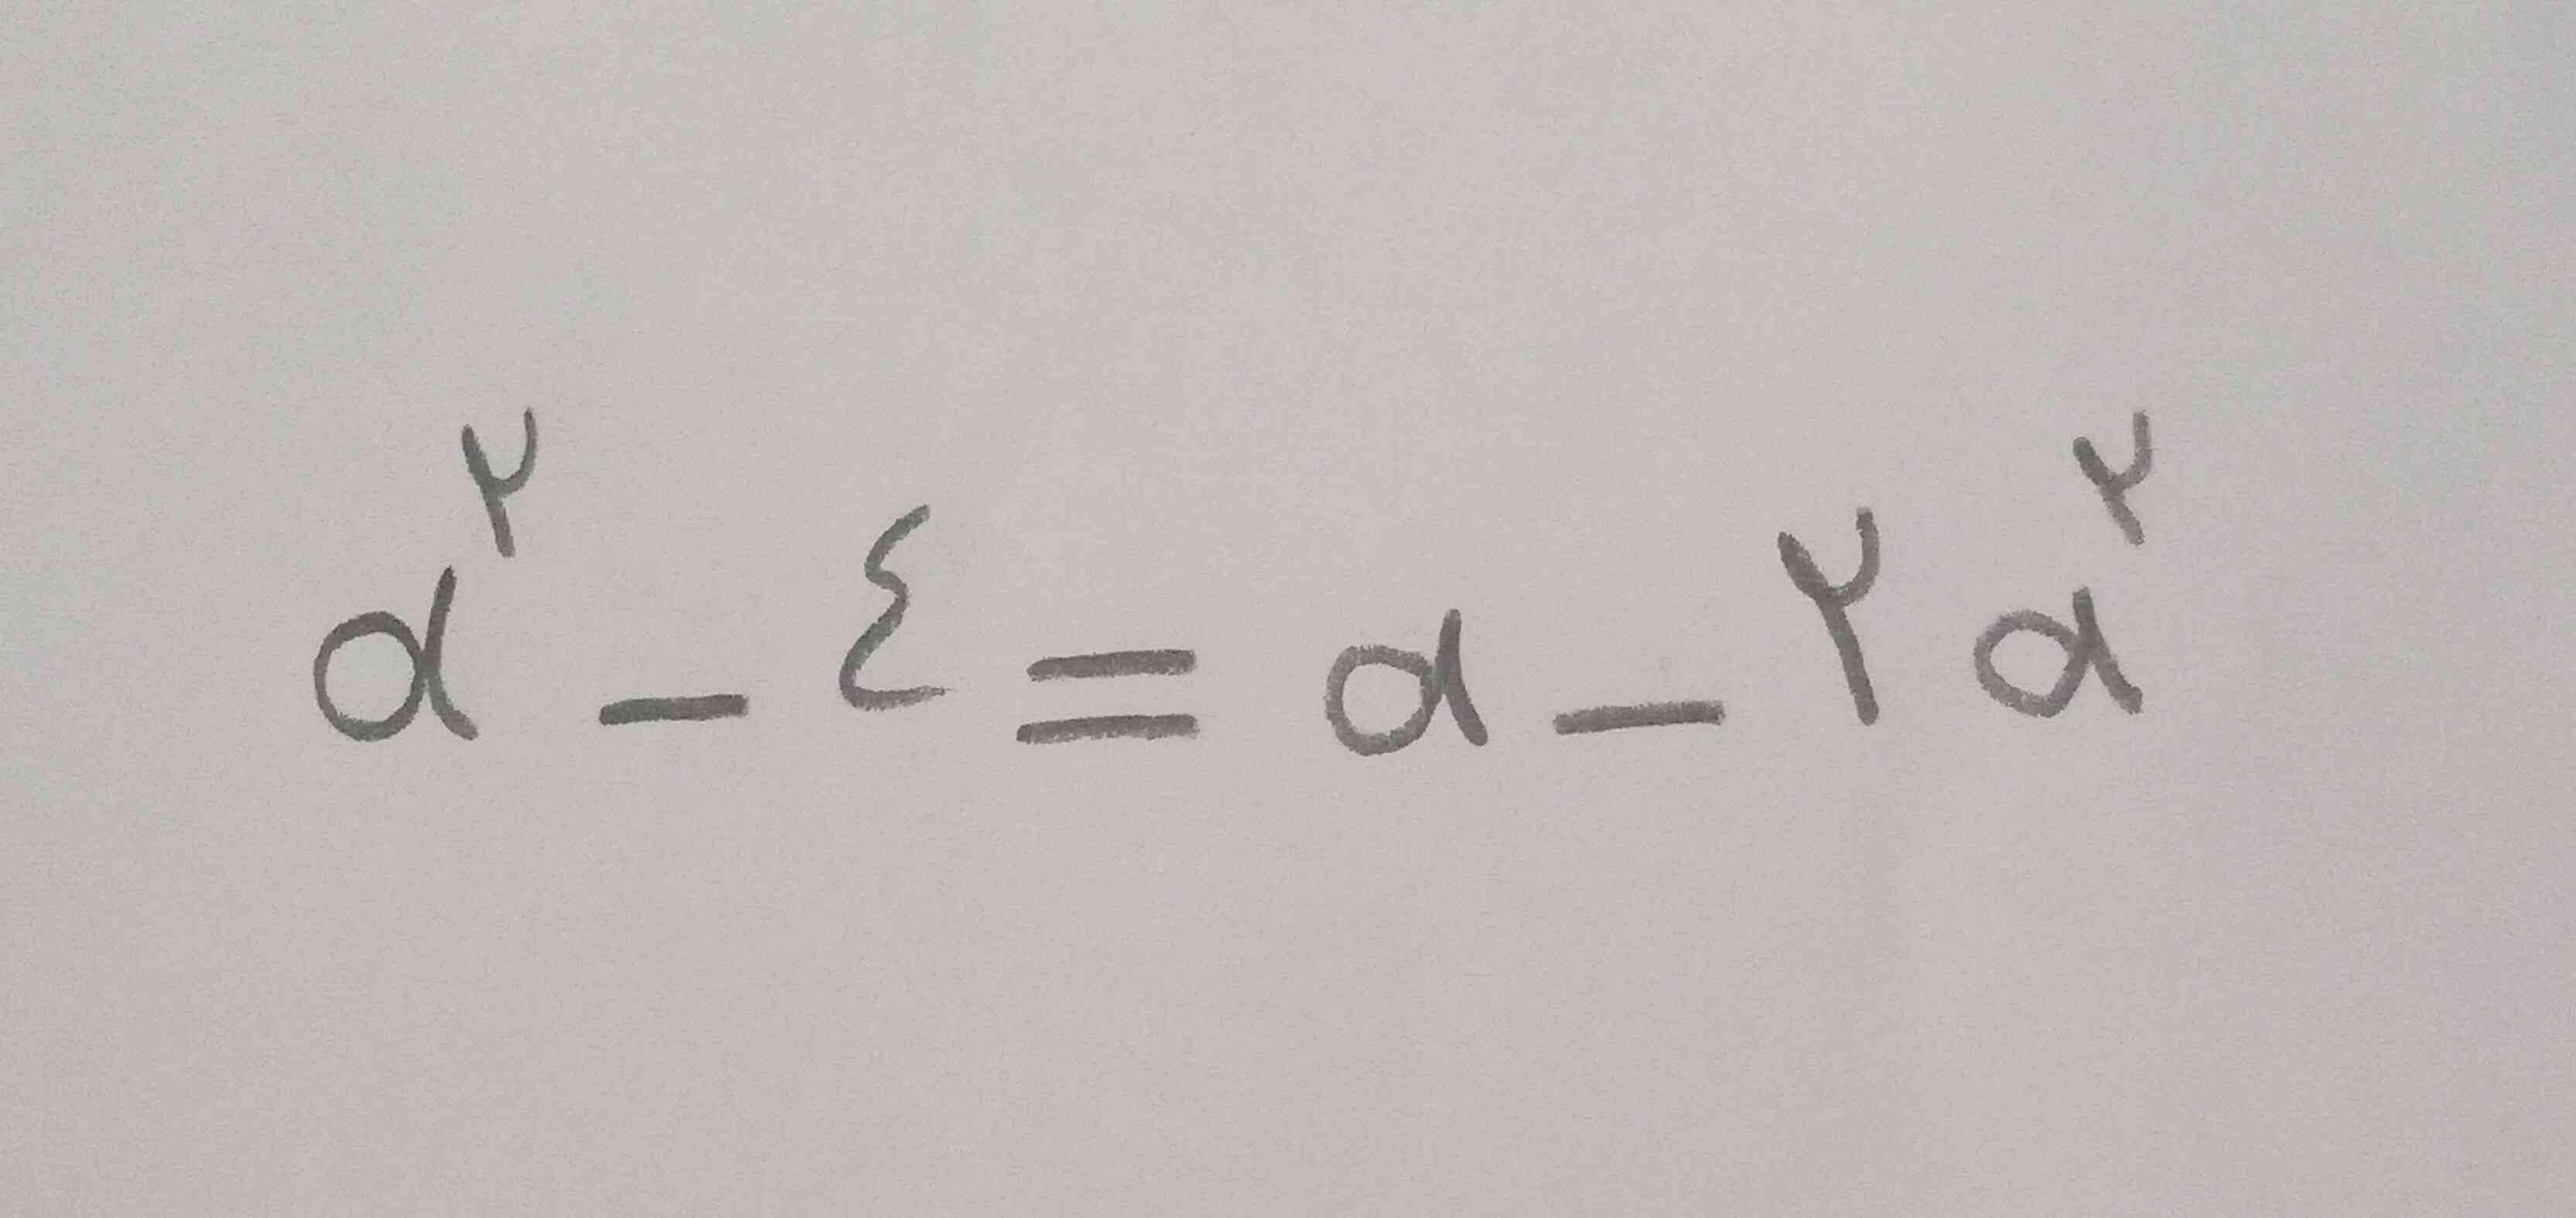 لطفاً معادله را با روش آن حل بفرمائید.  ممنون